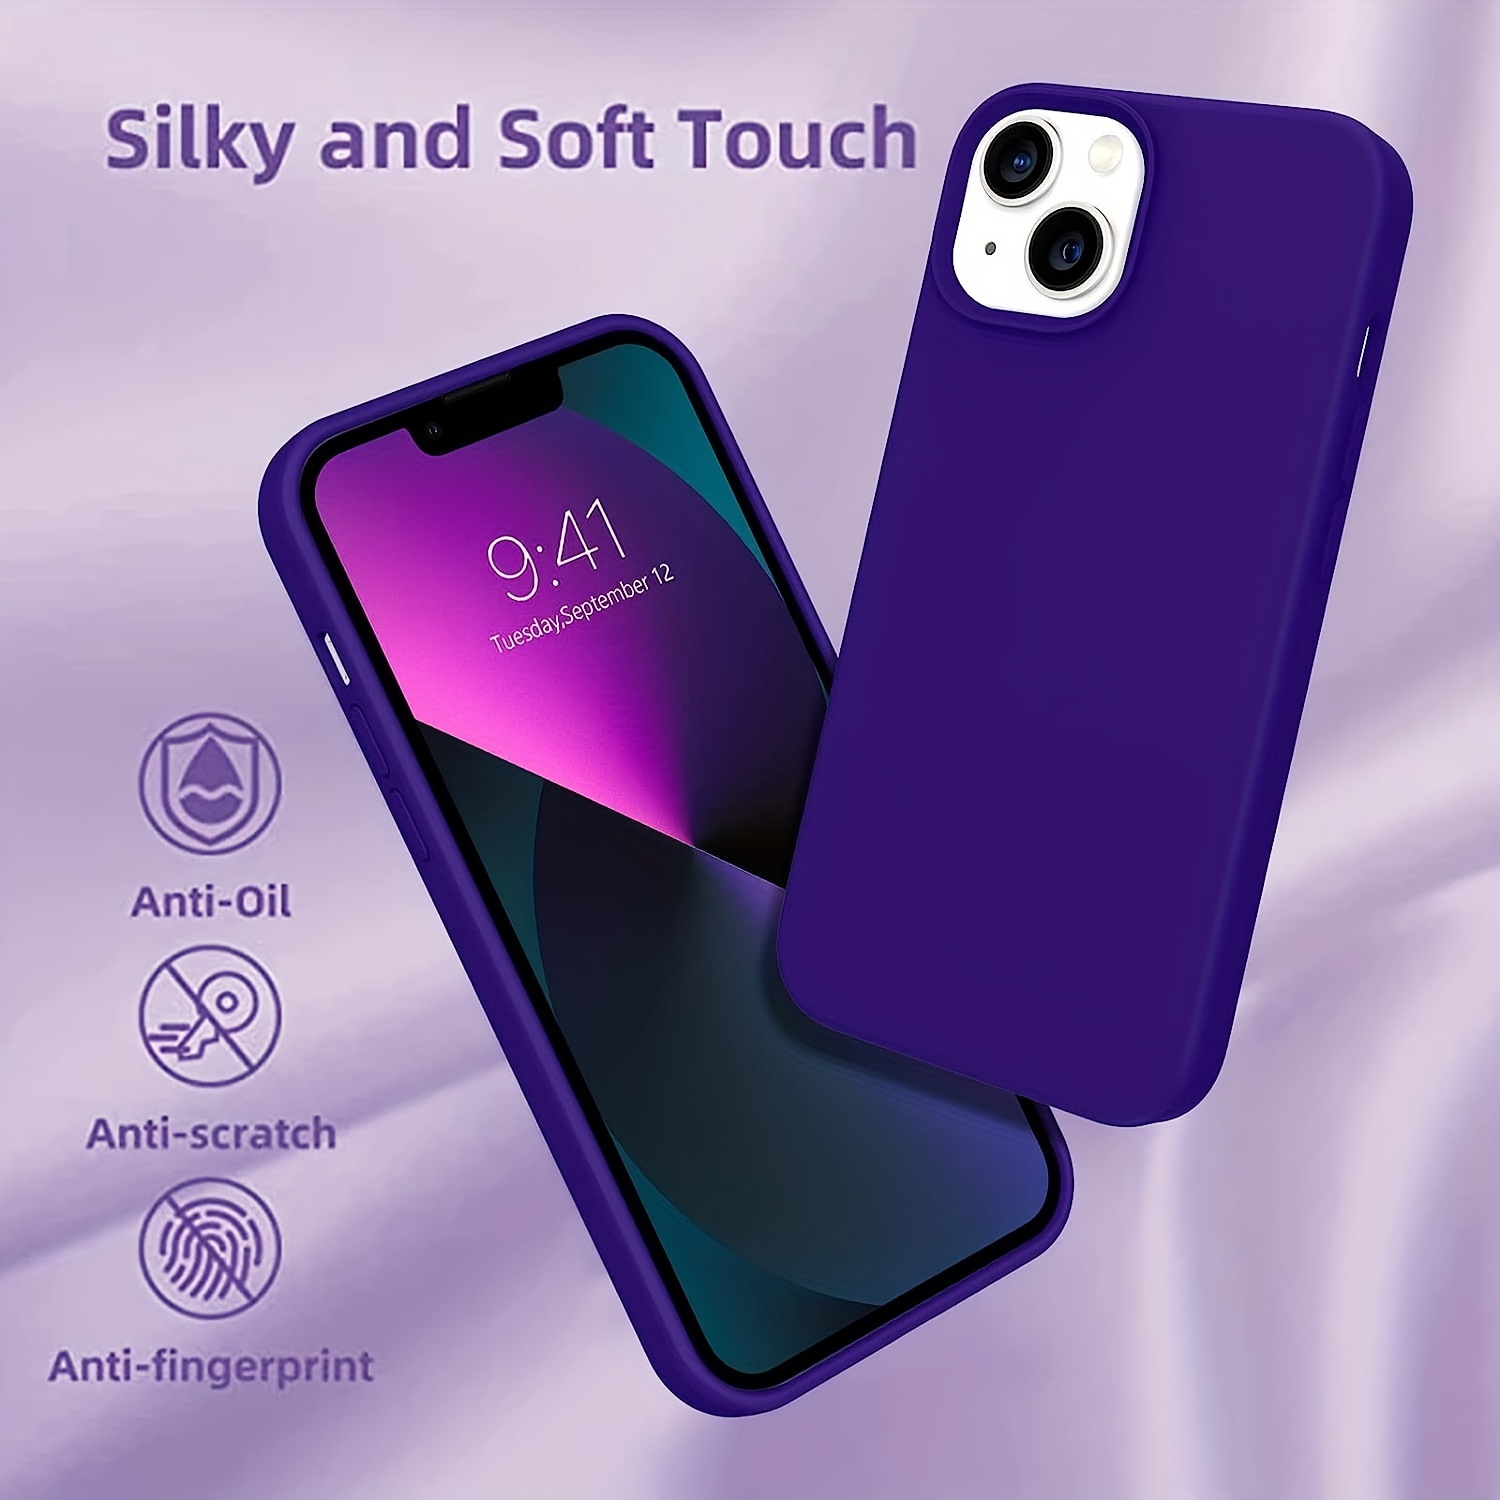 Surphy - Carcasa de silicona compatible con iPhone SE 2020, iPhone 8,  iPhone 7, funda de silicona líquida (con forro de microfibra) para iPhone  7